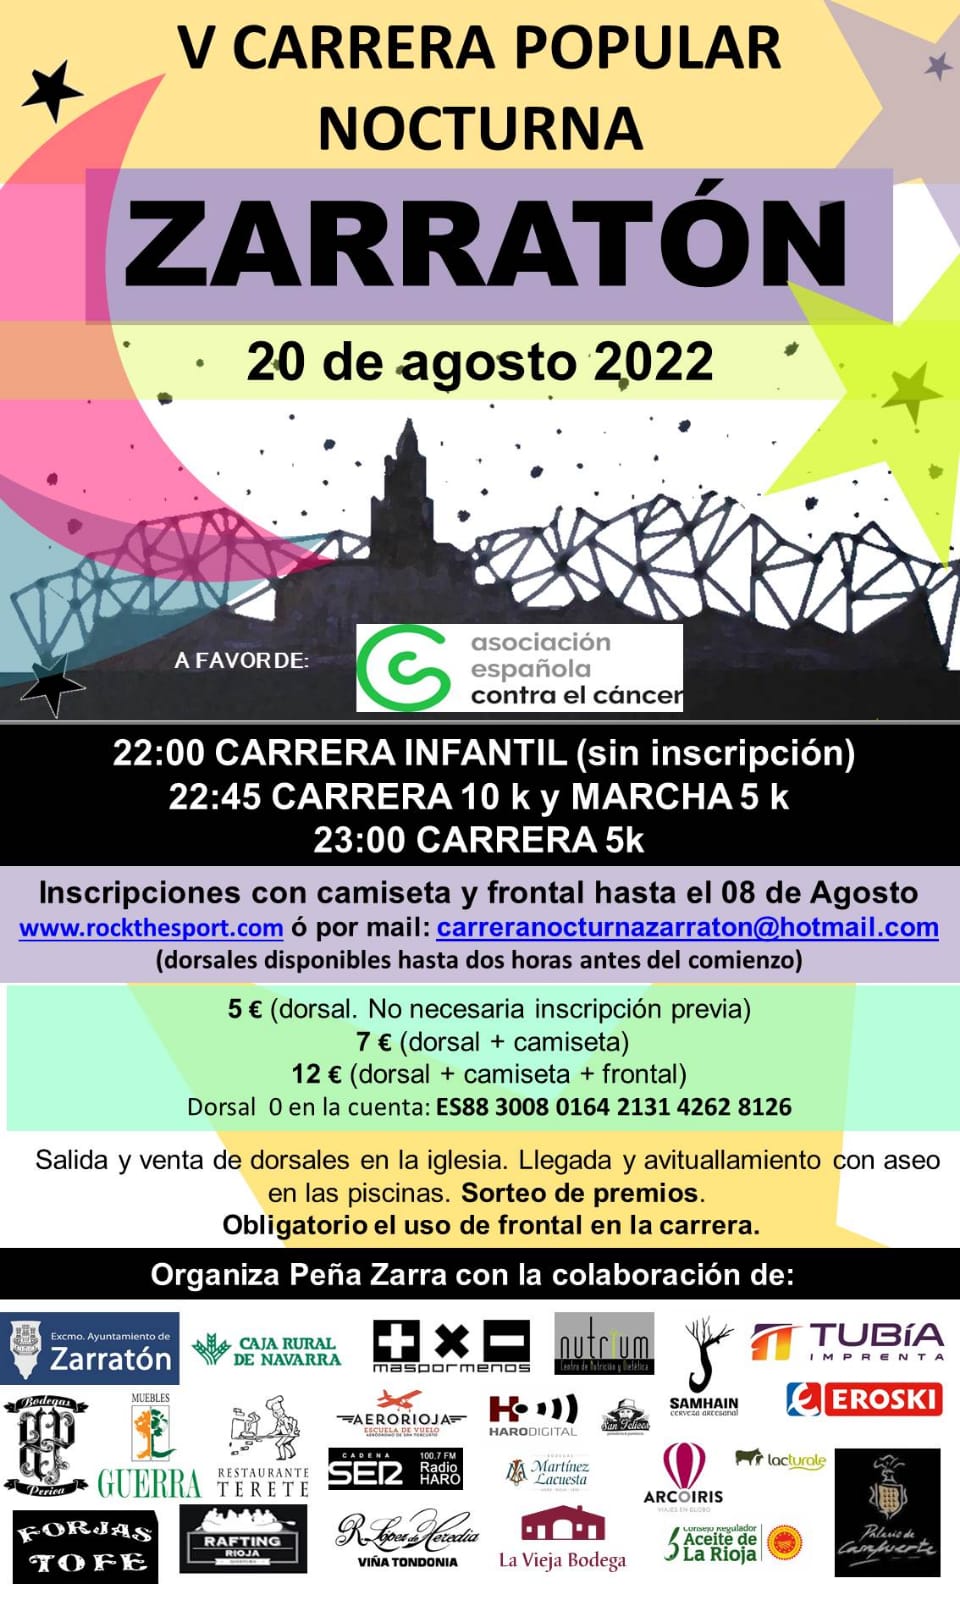 V Carrera Popular Nocturna Zarratón 2022